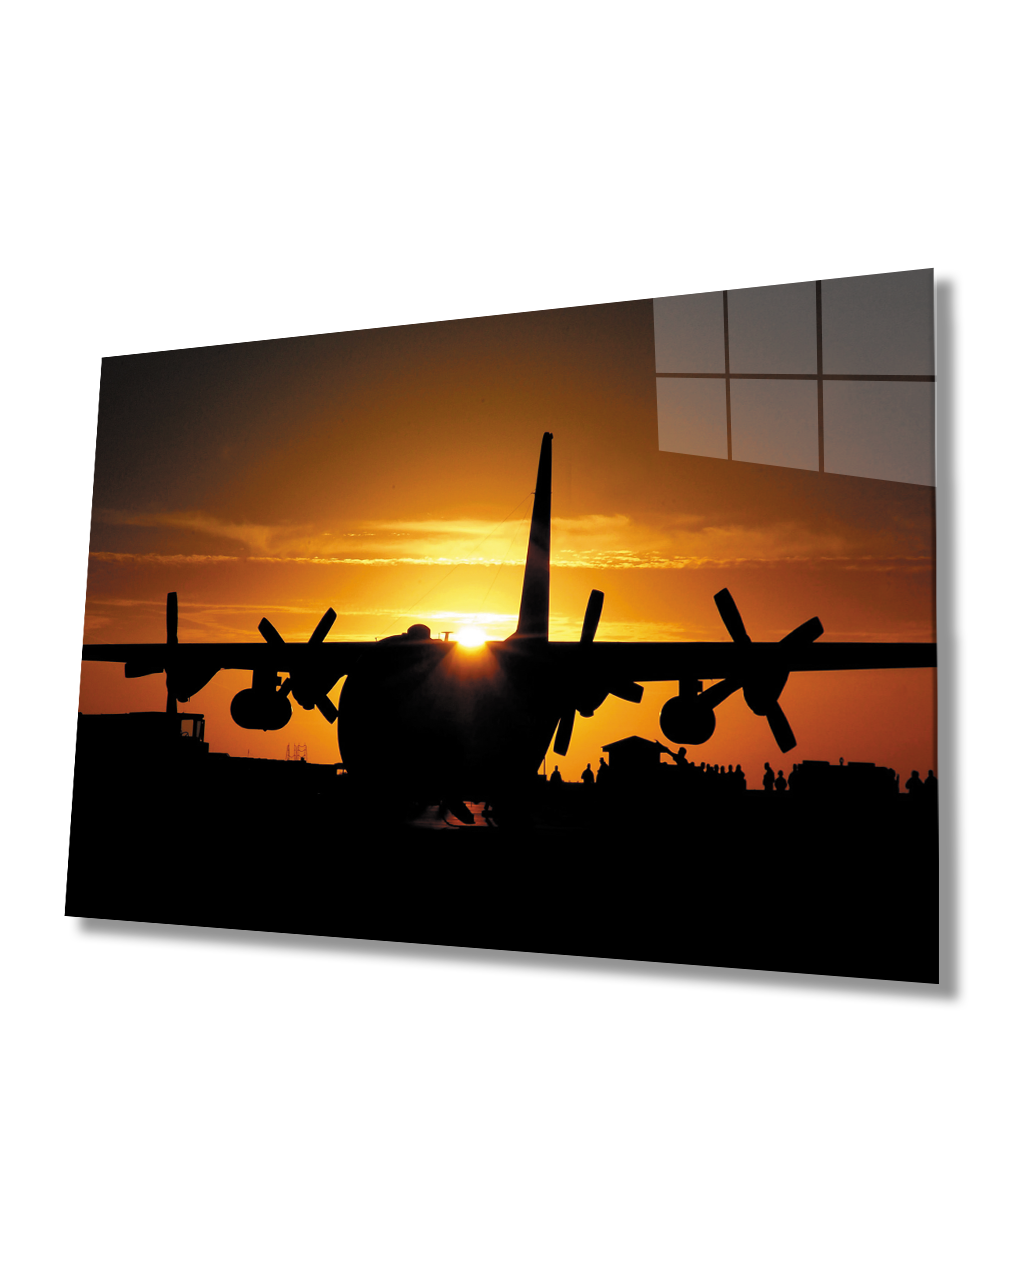 Gün Batımında Uçak Cam Tablo  4mm Dayanıklı Temperli Cam Aircraft Glass Table 4mm Durable Tempered Glass At Sunset